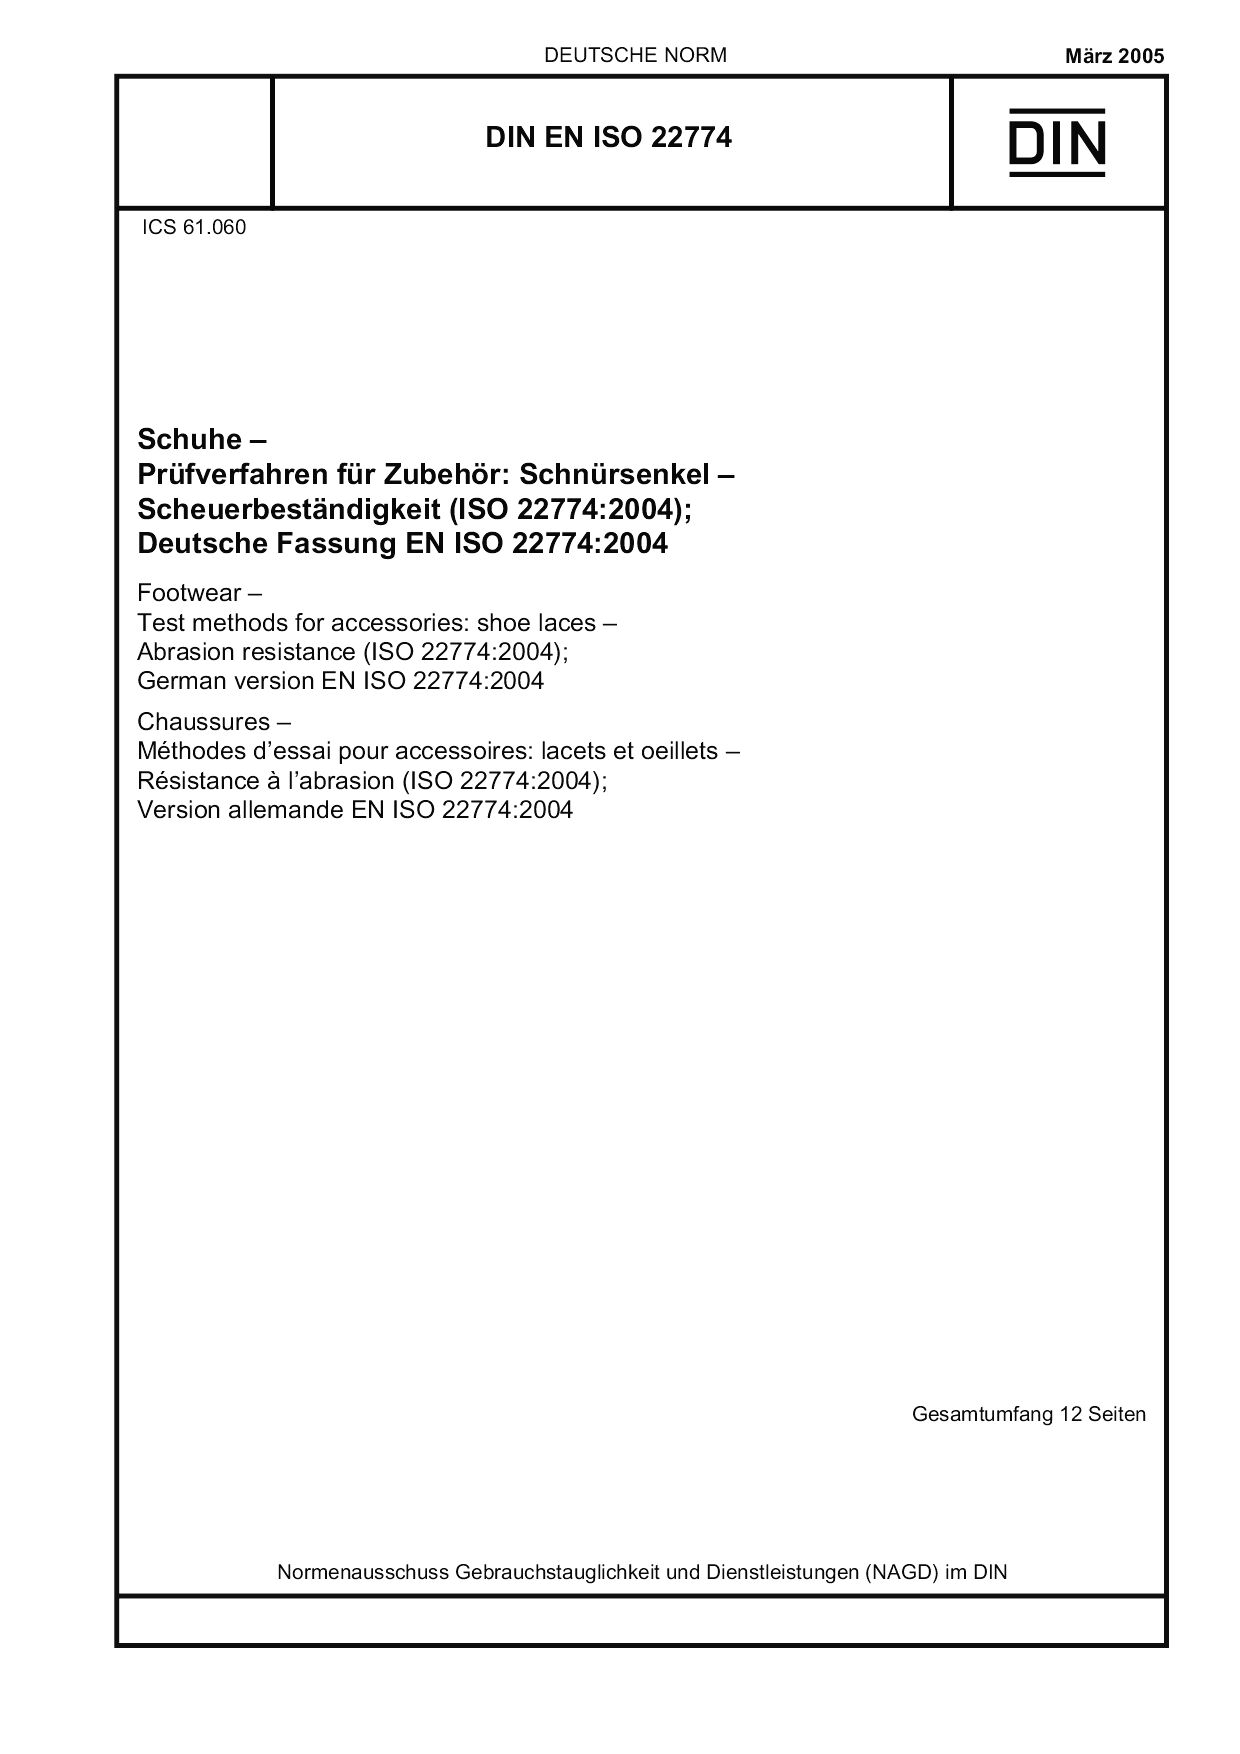 DIN EN ISO 22774:2005封面图